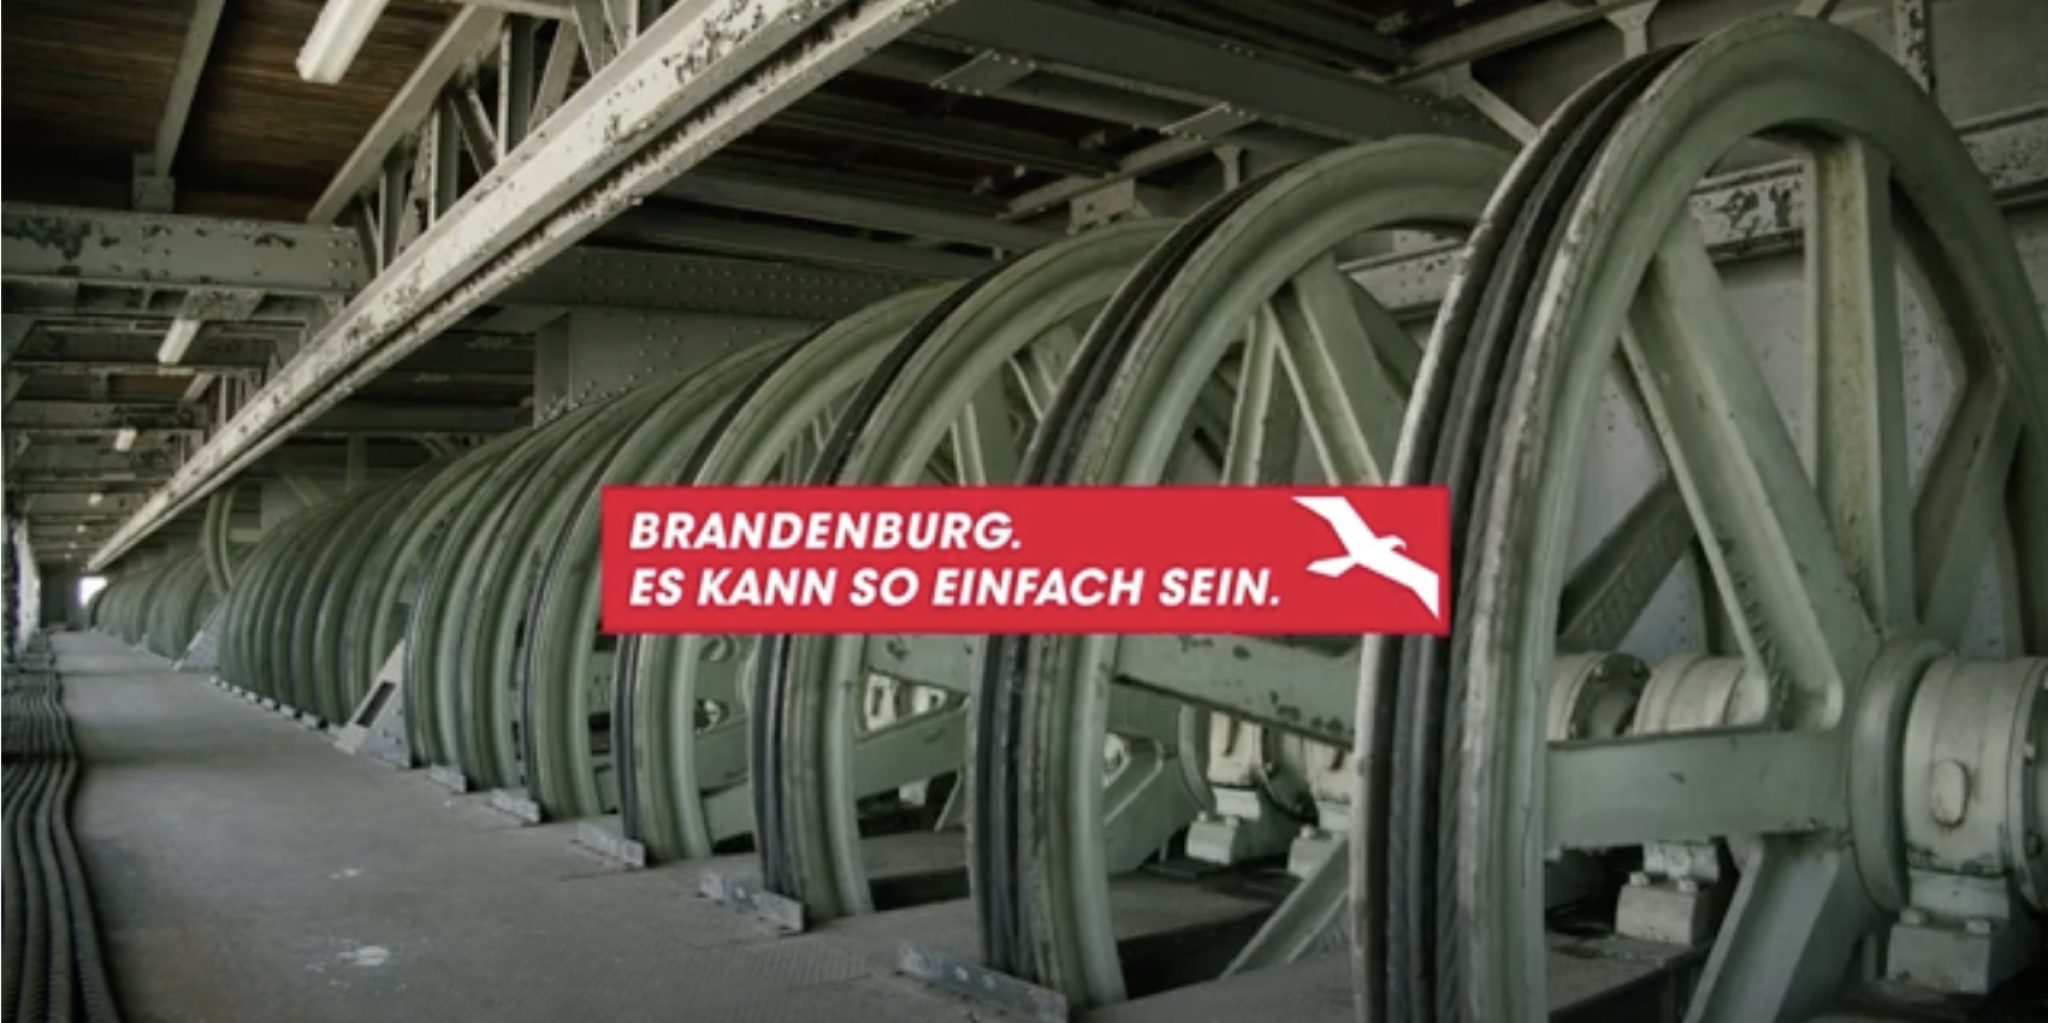 Eine große Fabrikhalle mit Rädern und einer Aufschrift "Brandenburg. Es kann so einfach sein"